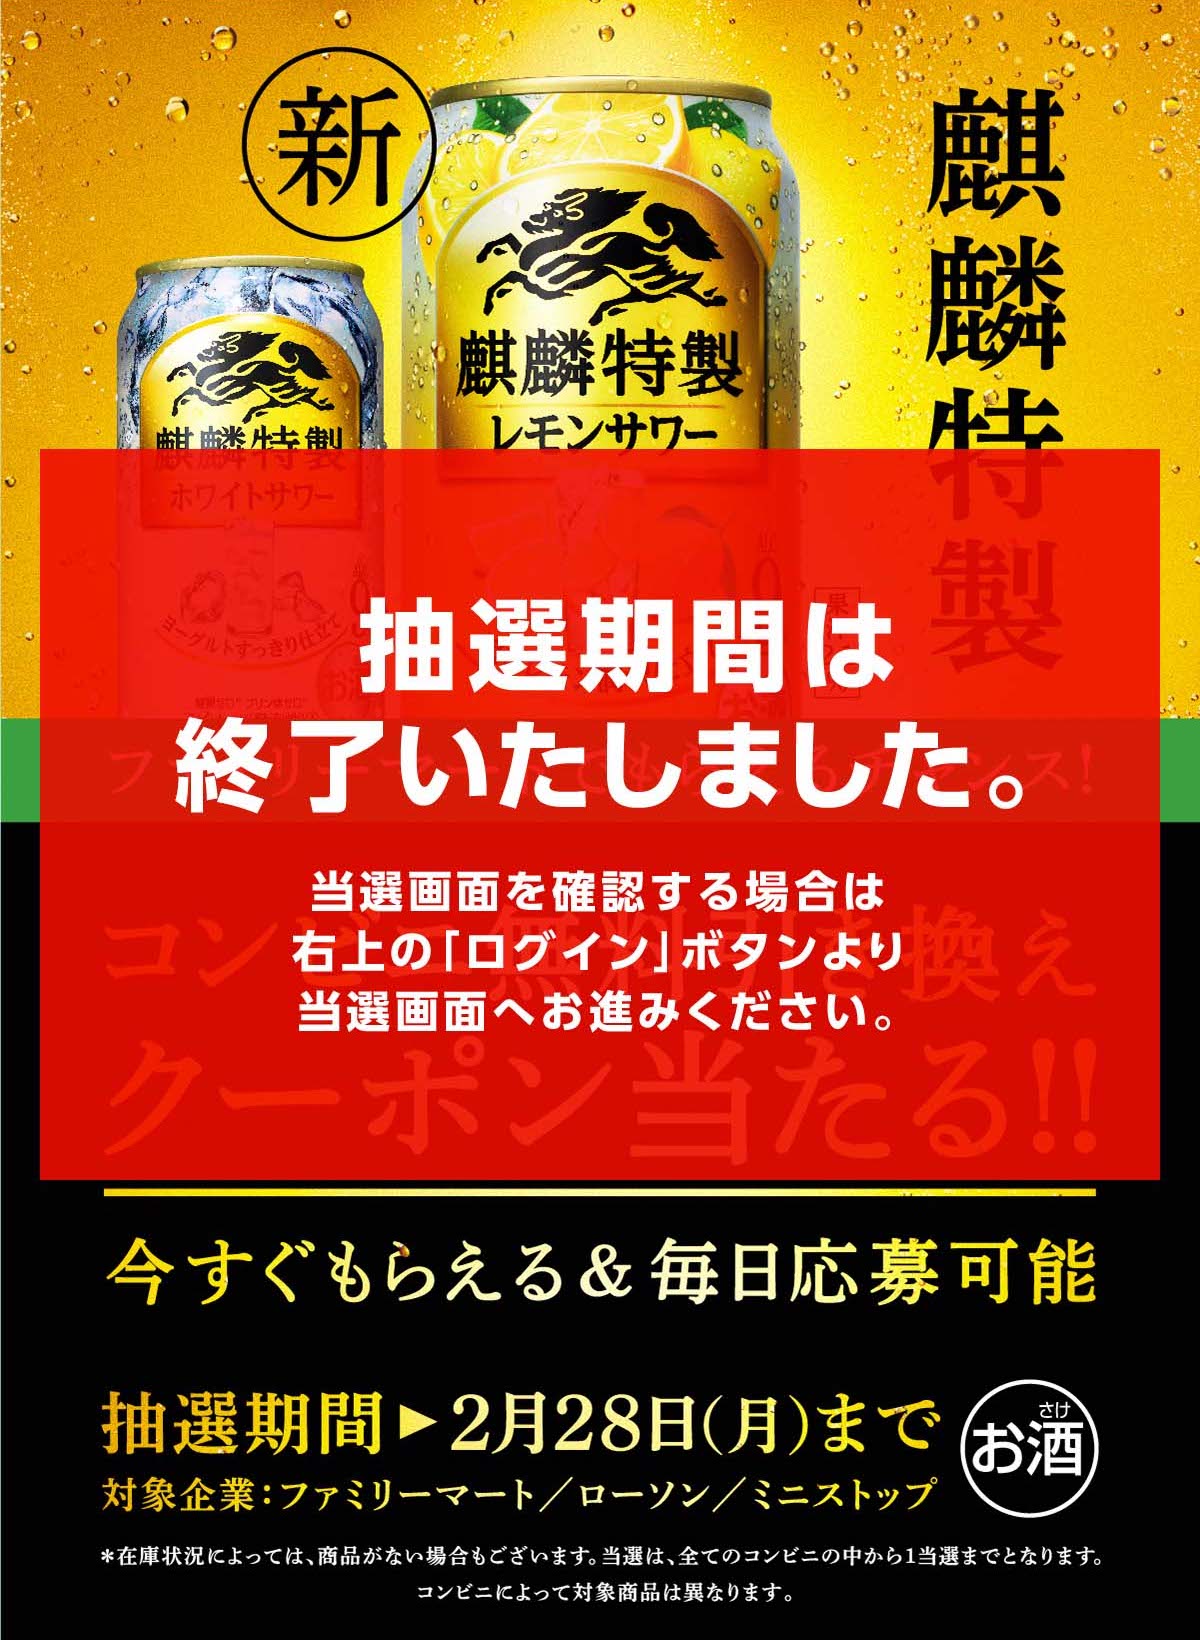 日本のレモンサワーを、新しく。麒麟特製レモンサワー新発売！ コンビニ無料引き換え券が抽選で今すぐもらえる！キャンペーン＜ファミリーマート＞